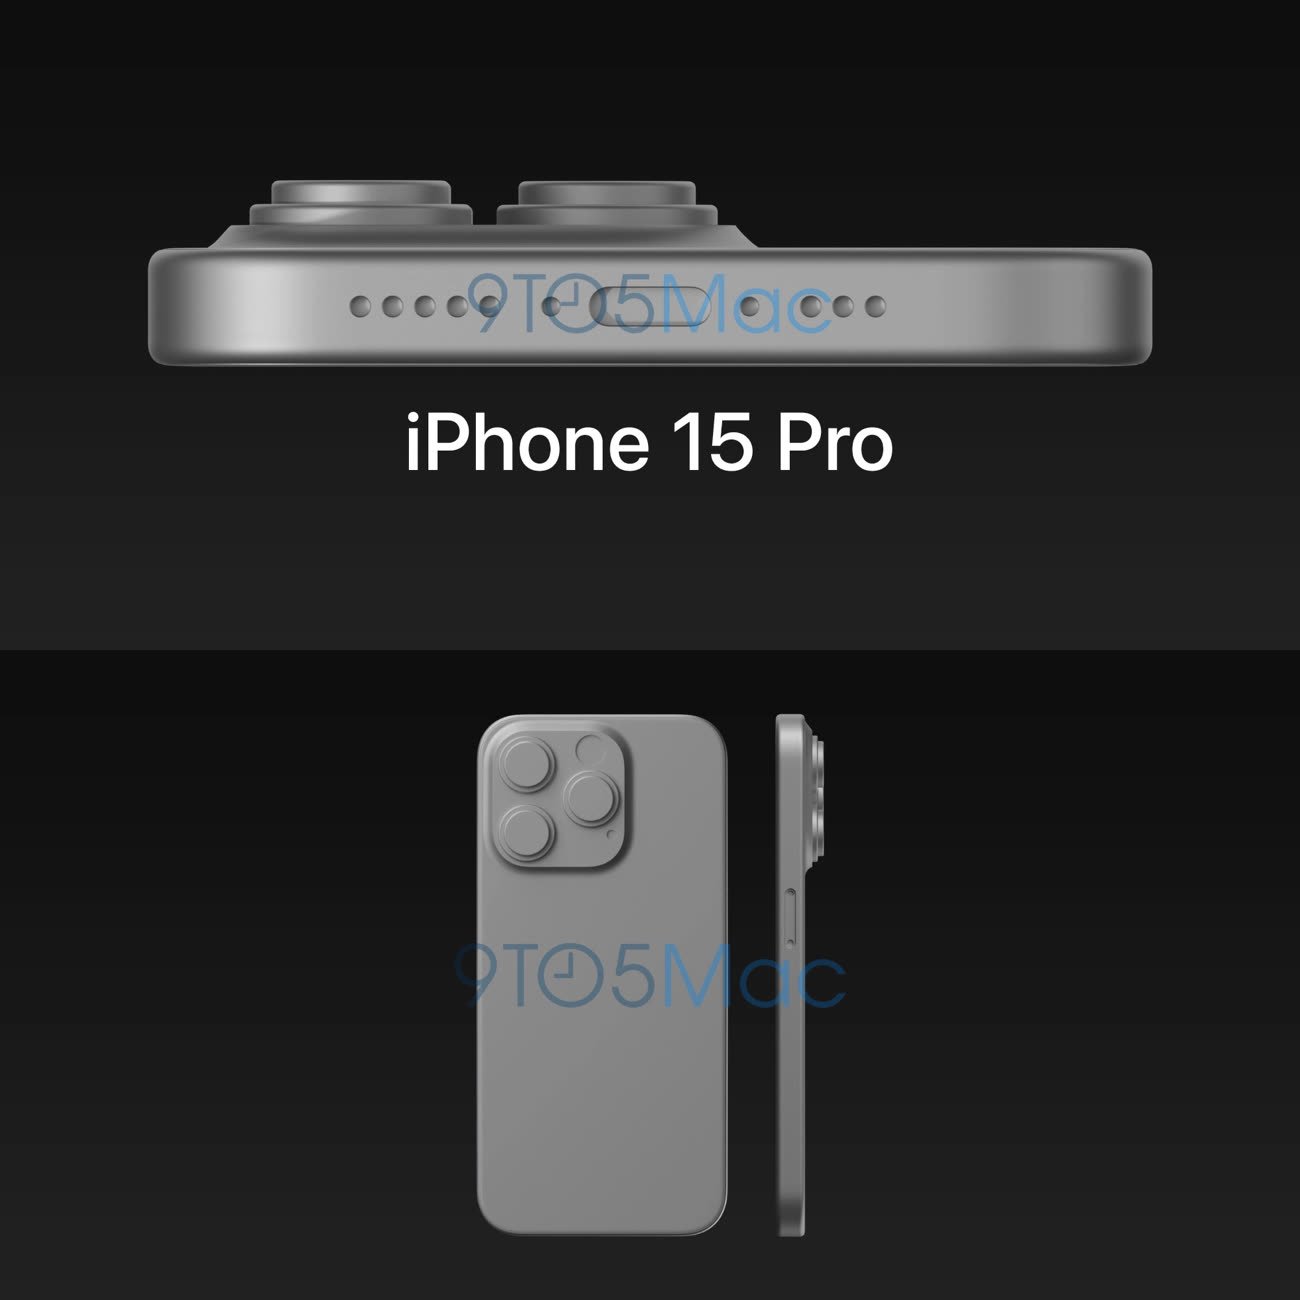 L'iPhone 11 Pro Max aurait bel et bien le meilleur écran du marché